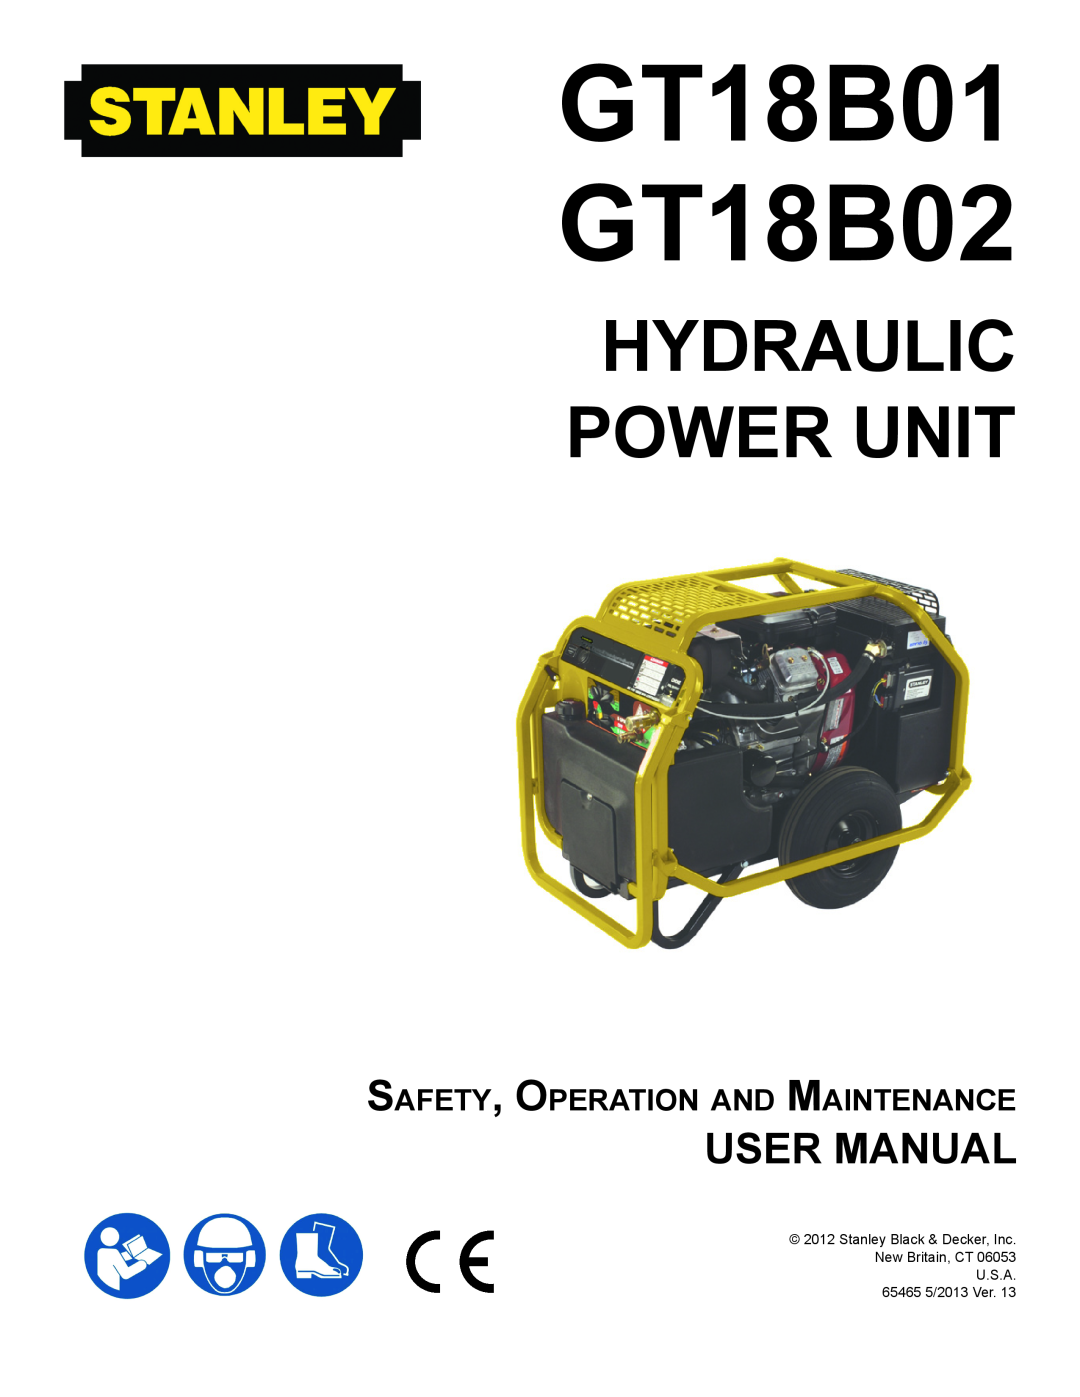 Stanley Black & Decker user manual GT18B01 GT18B02, Hydraulic Power Unit, User Manual 